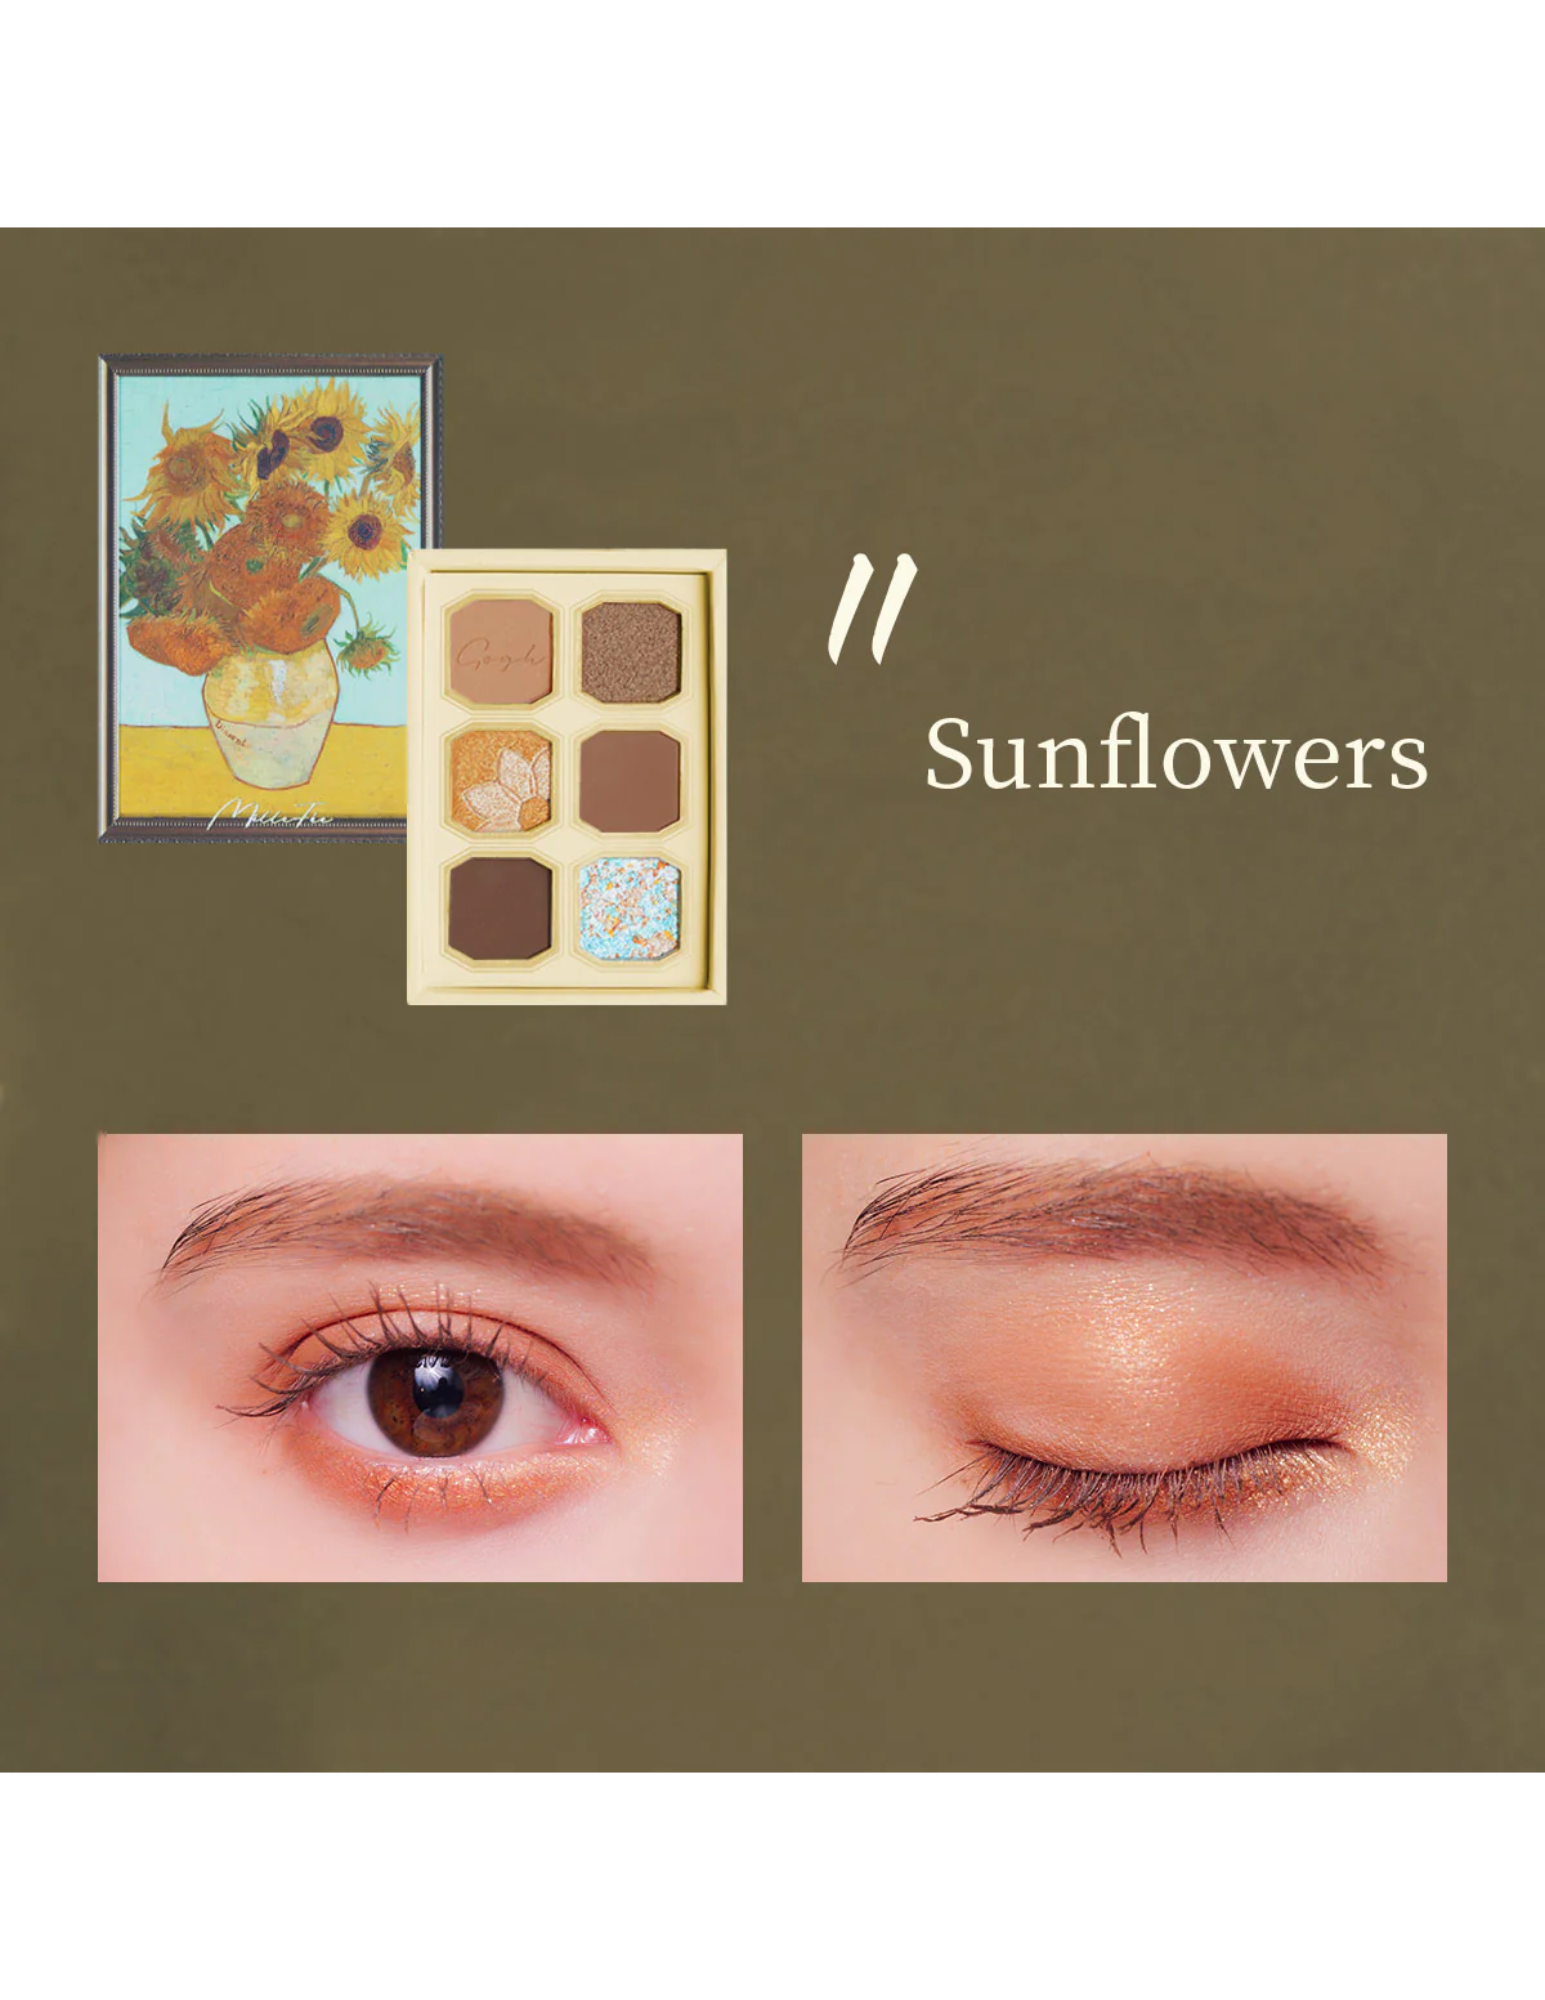 MilleFee Painting Eyeshadow Palette | Vincent Van Gogh